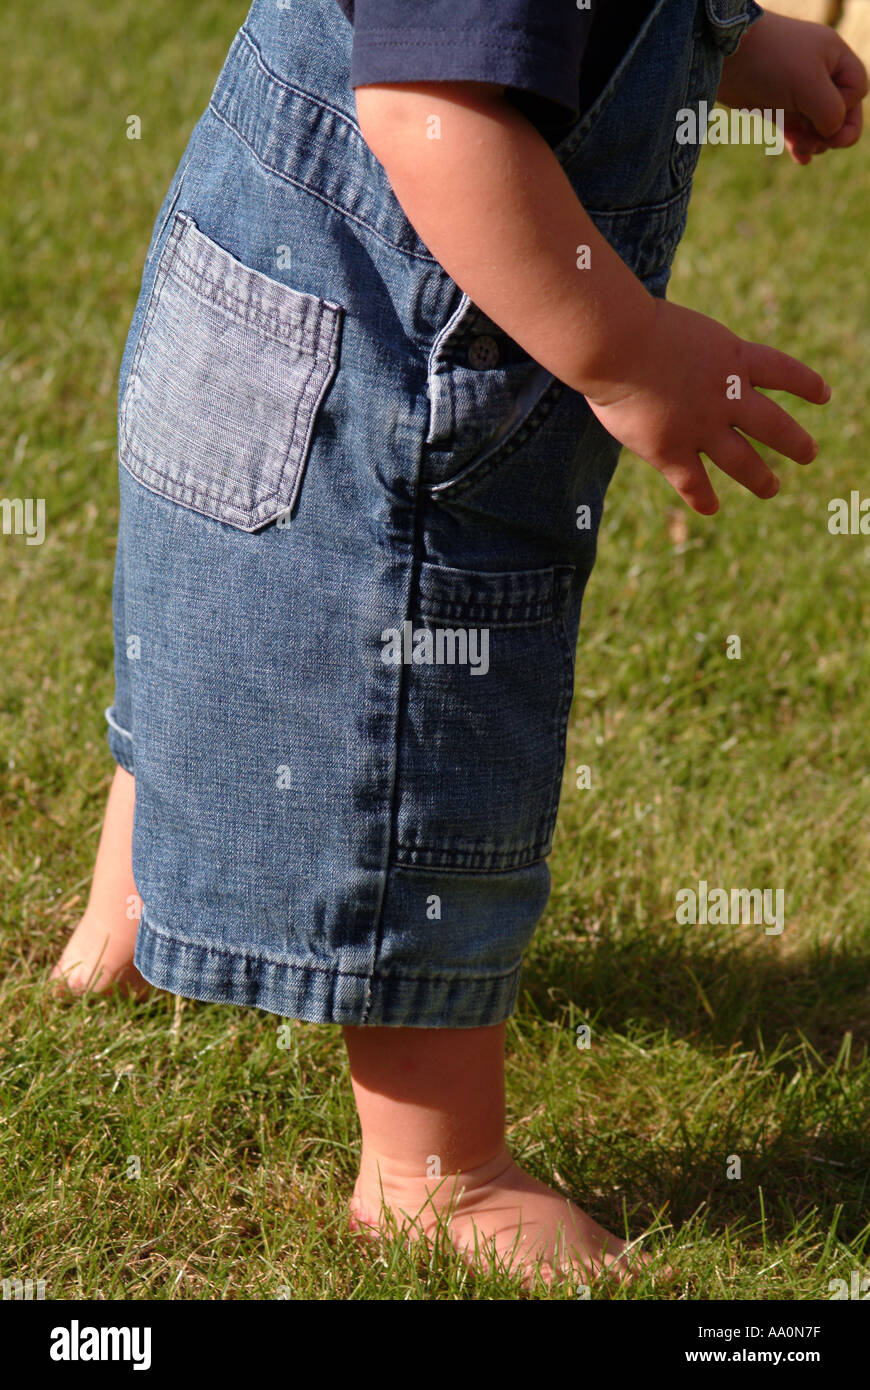 Nahaufnahme eines Kleinkindes barfuß auf dem Rasen und tragen Jeans-Latzhose  Stockfotografie - Alamy